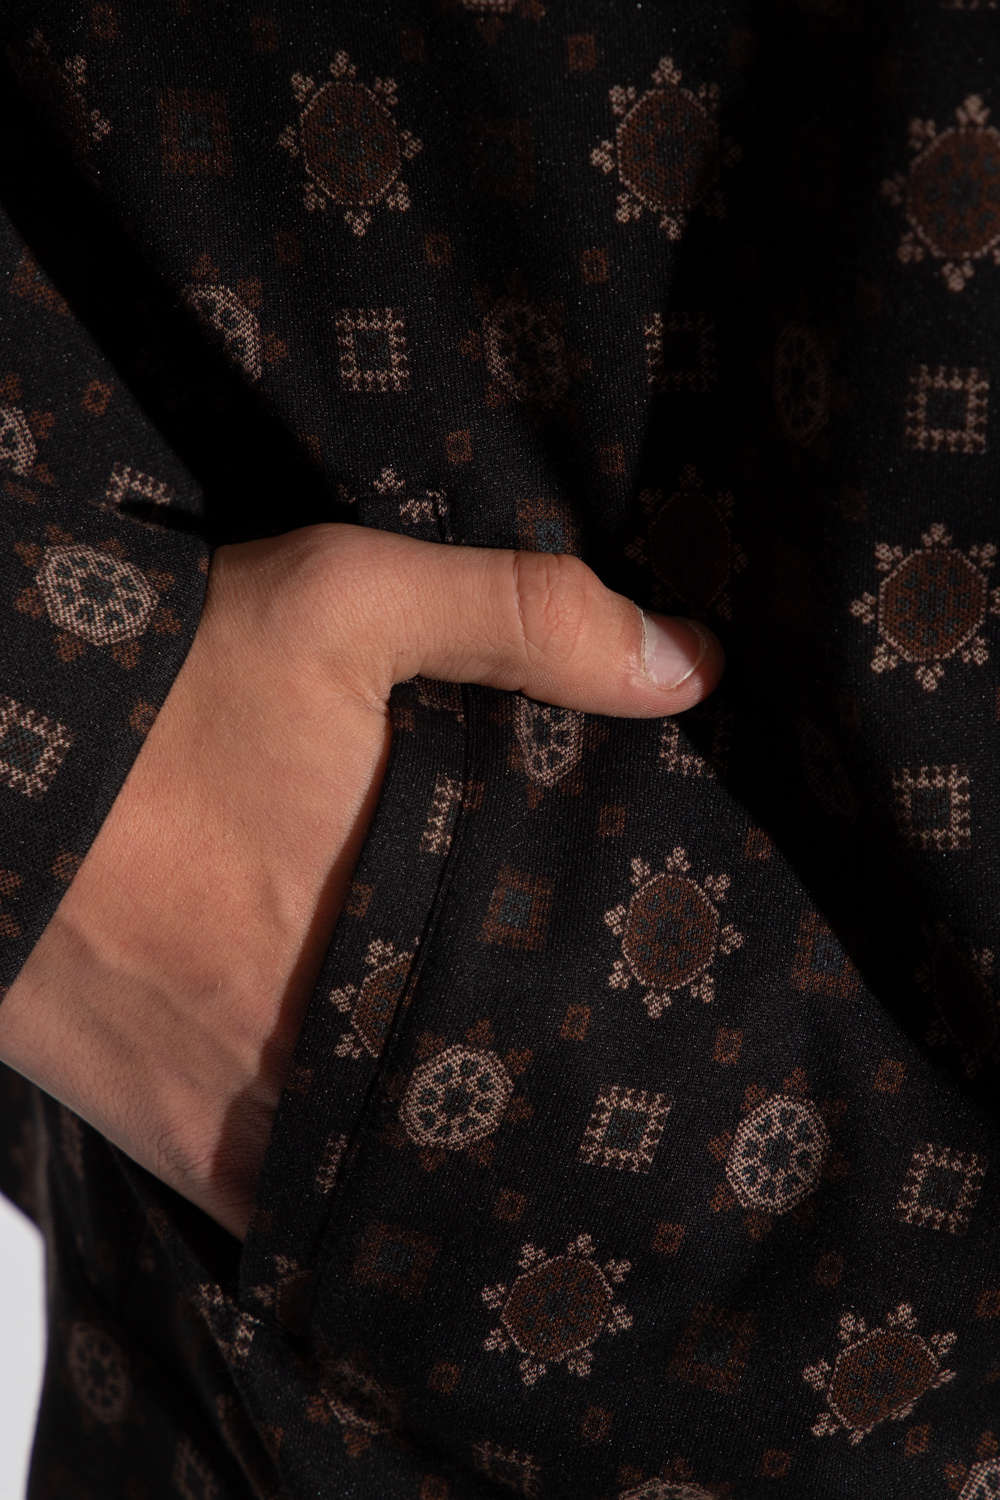 AllSaints ‘Flynn’ patterned sweatshirt